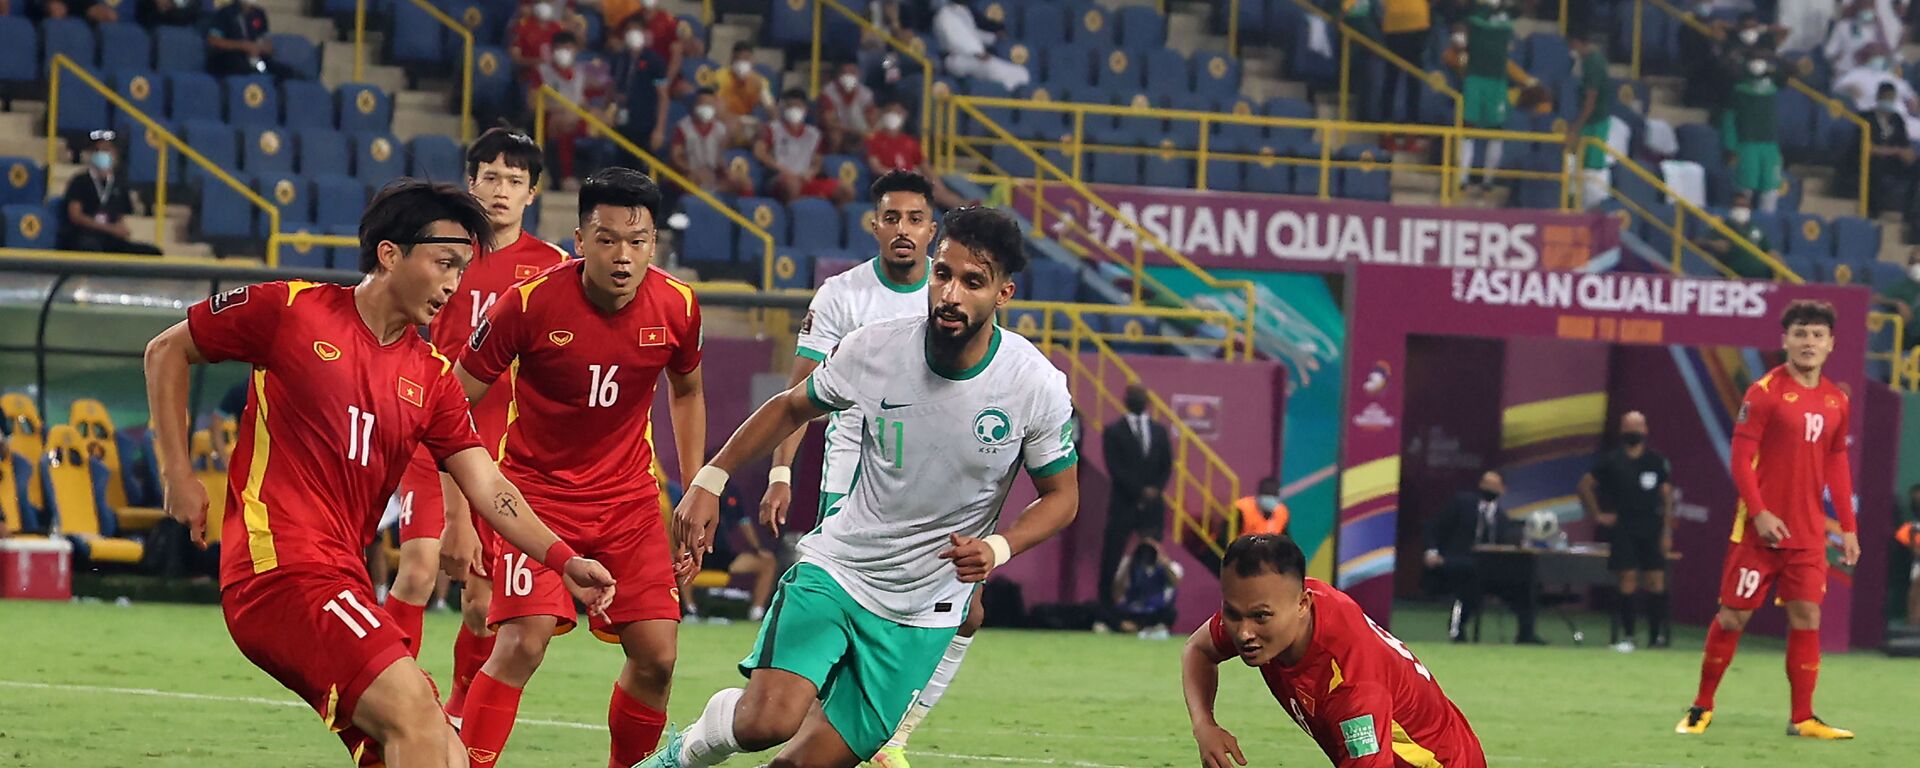 Trận mở màn AFC Asian Qualifiers - Road to Qatar, vòng loại thứ ba World Cup 2022 khu vực châu Á. - Sputnik Việt Nam, 1920, 03.09.2021